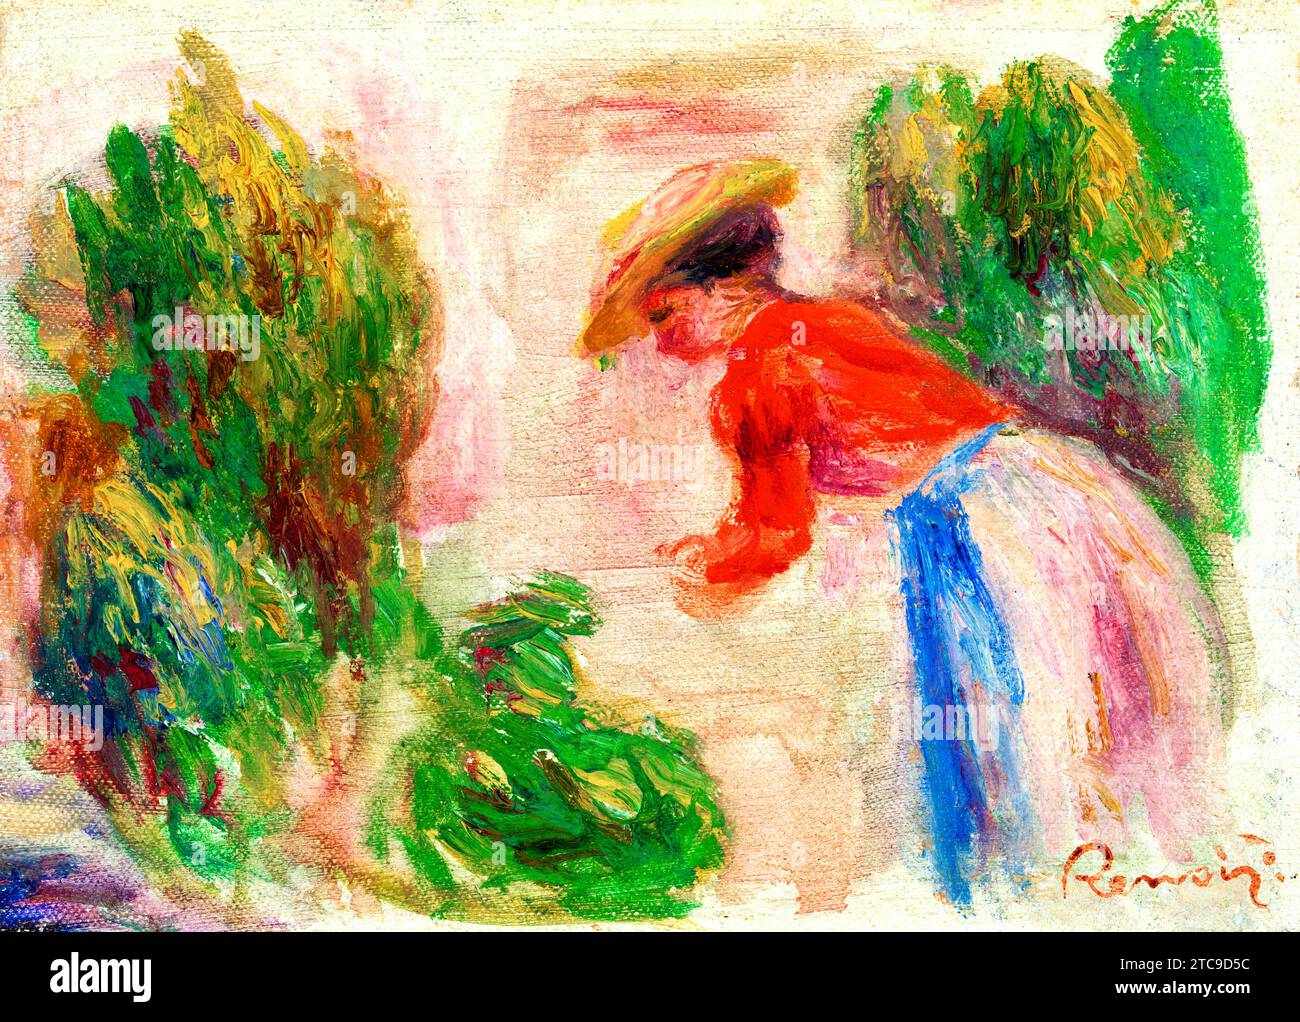 Woman Gathering Flowers (Femme cueillant des fleurs) by Pierre Auguste Renoir Stock Photo